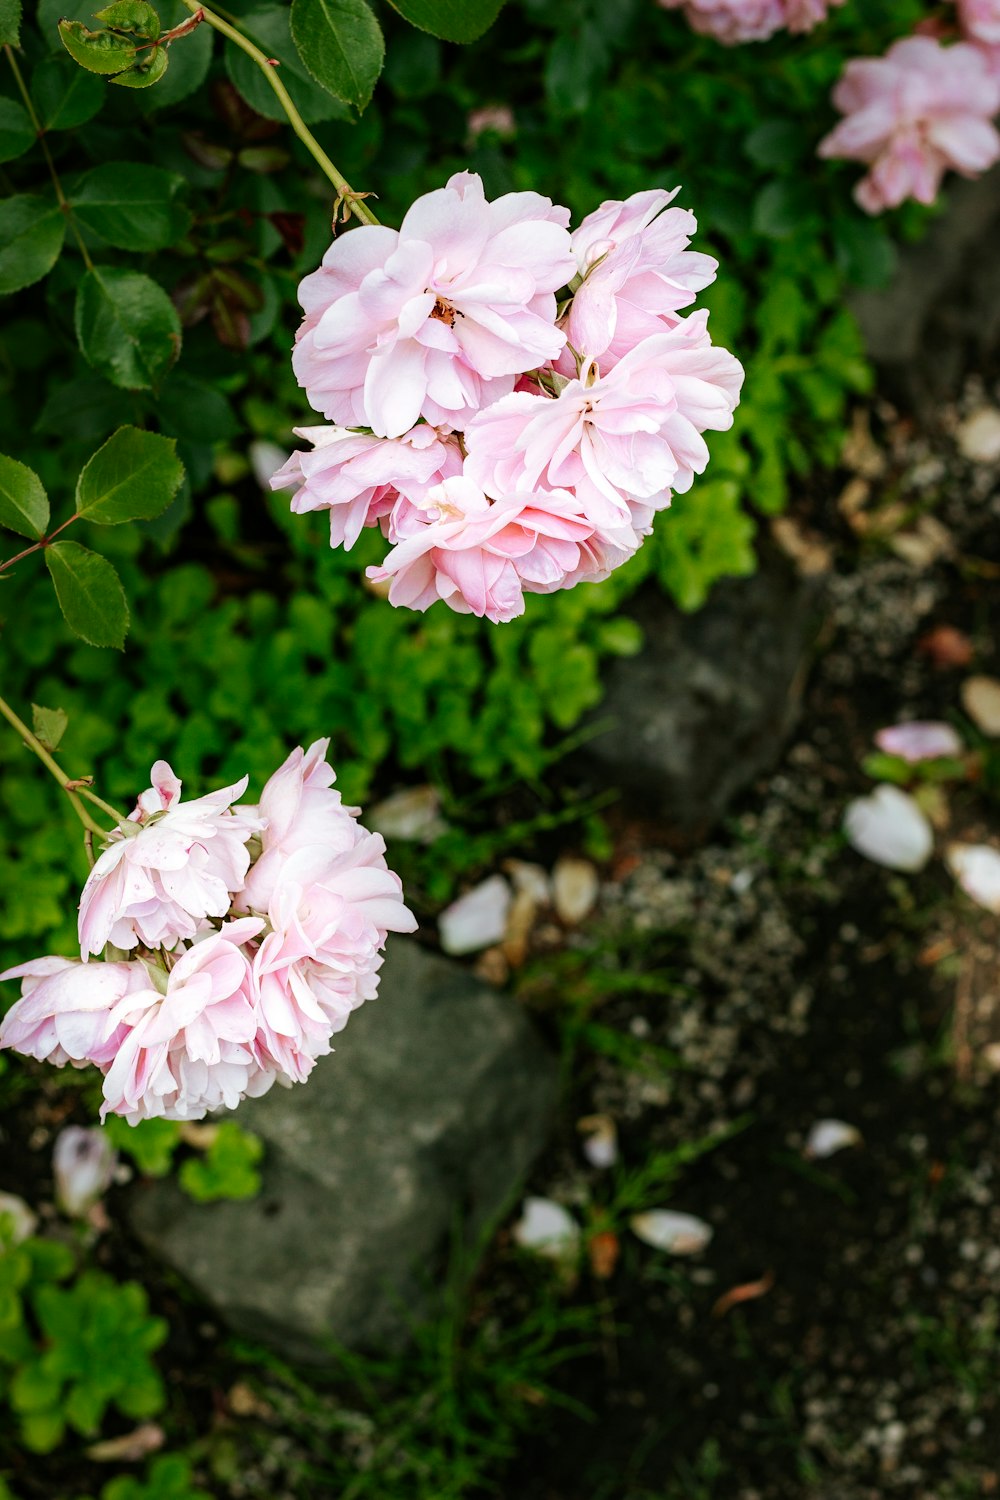 fiori rosa e bianchi su foglie verdi